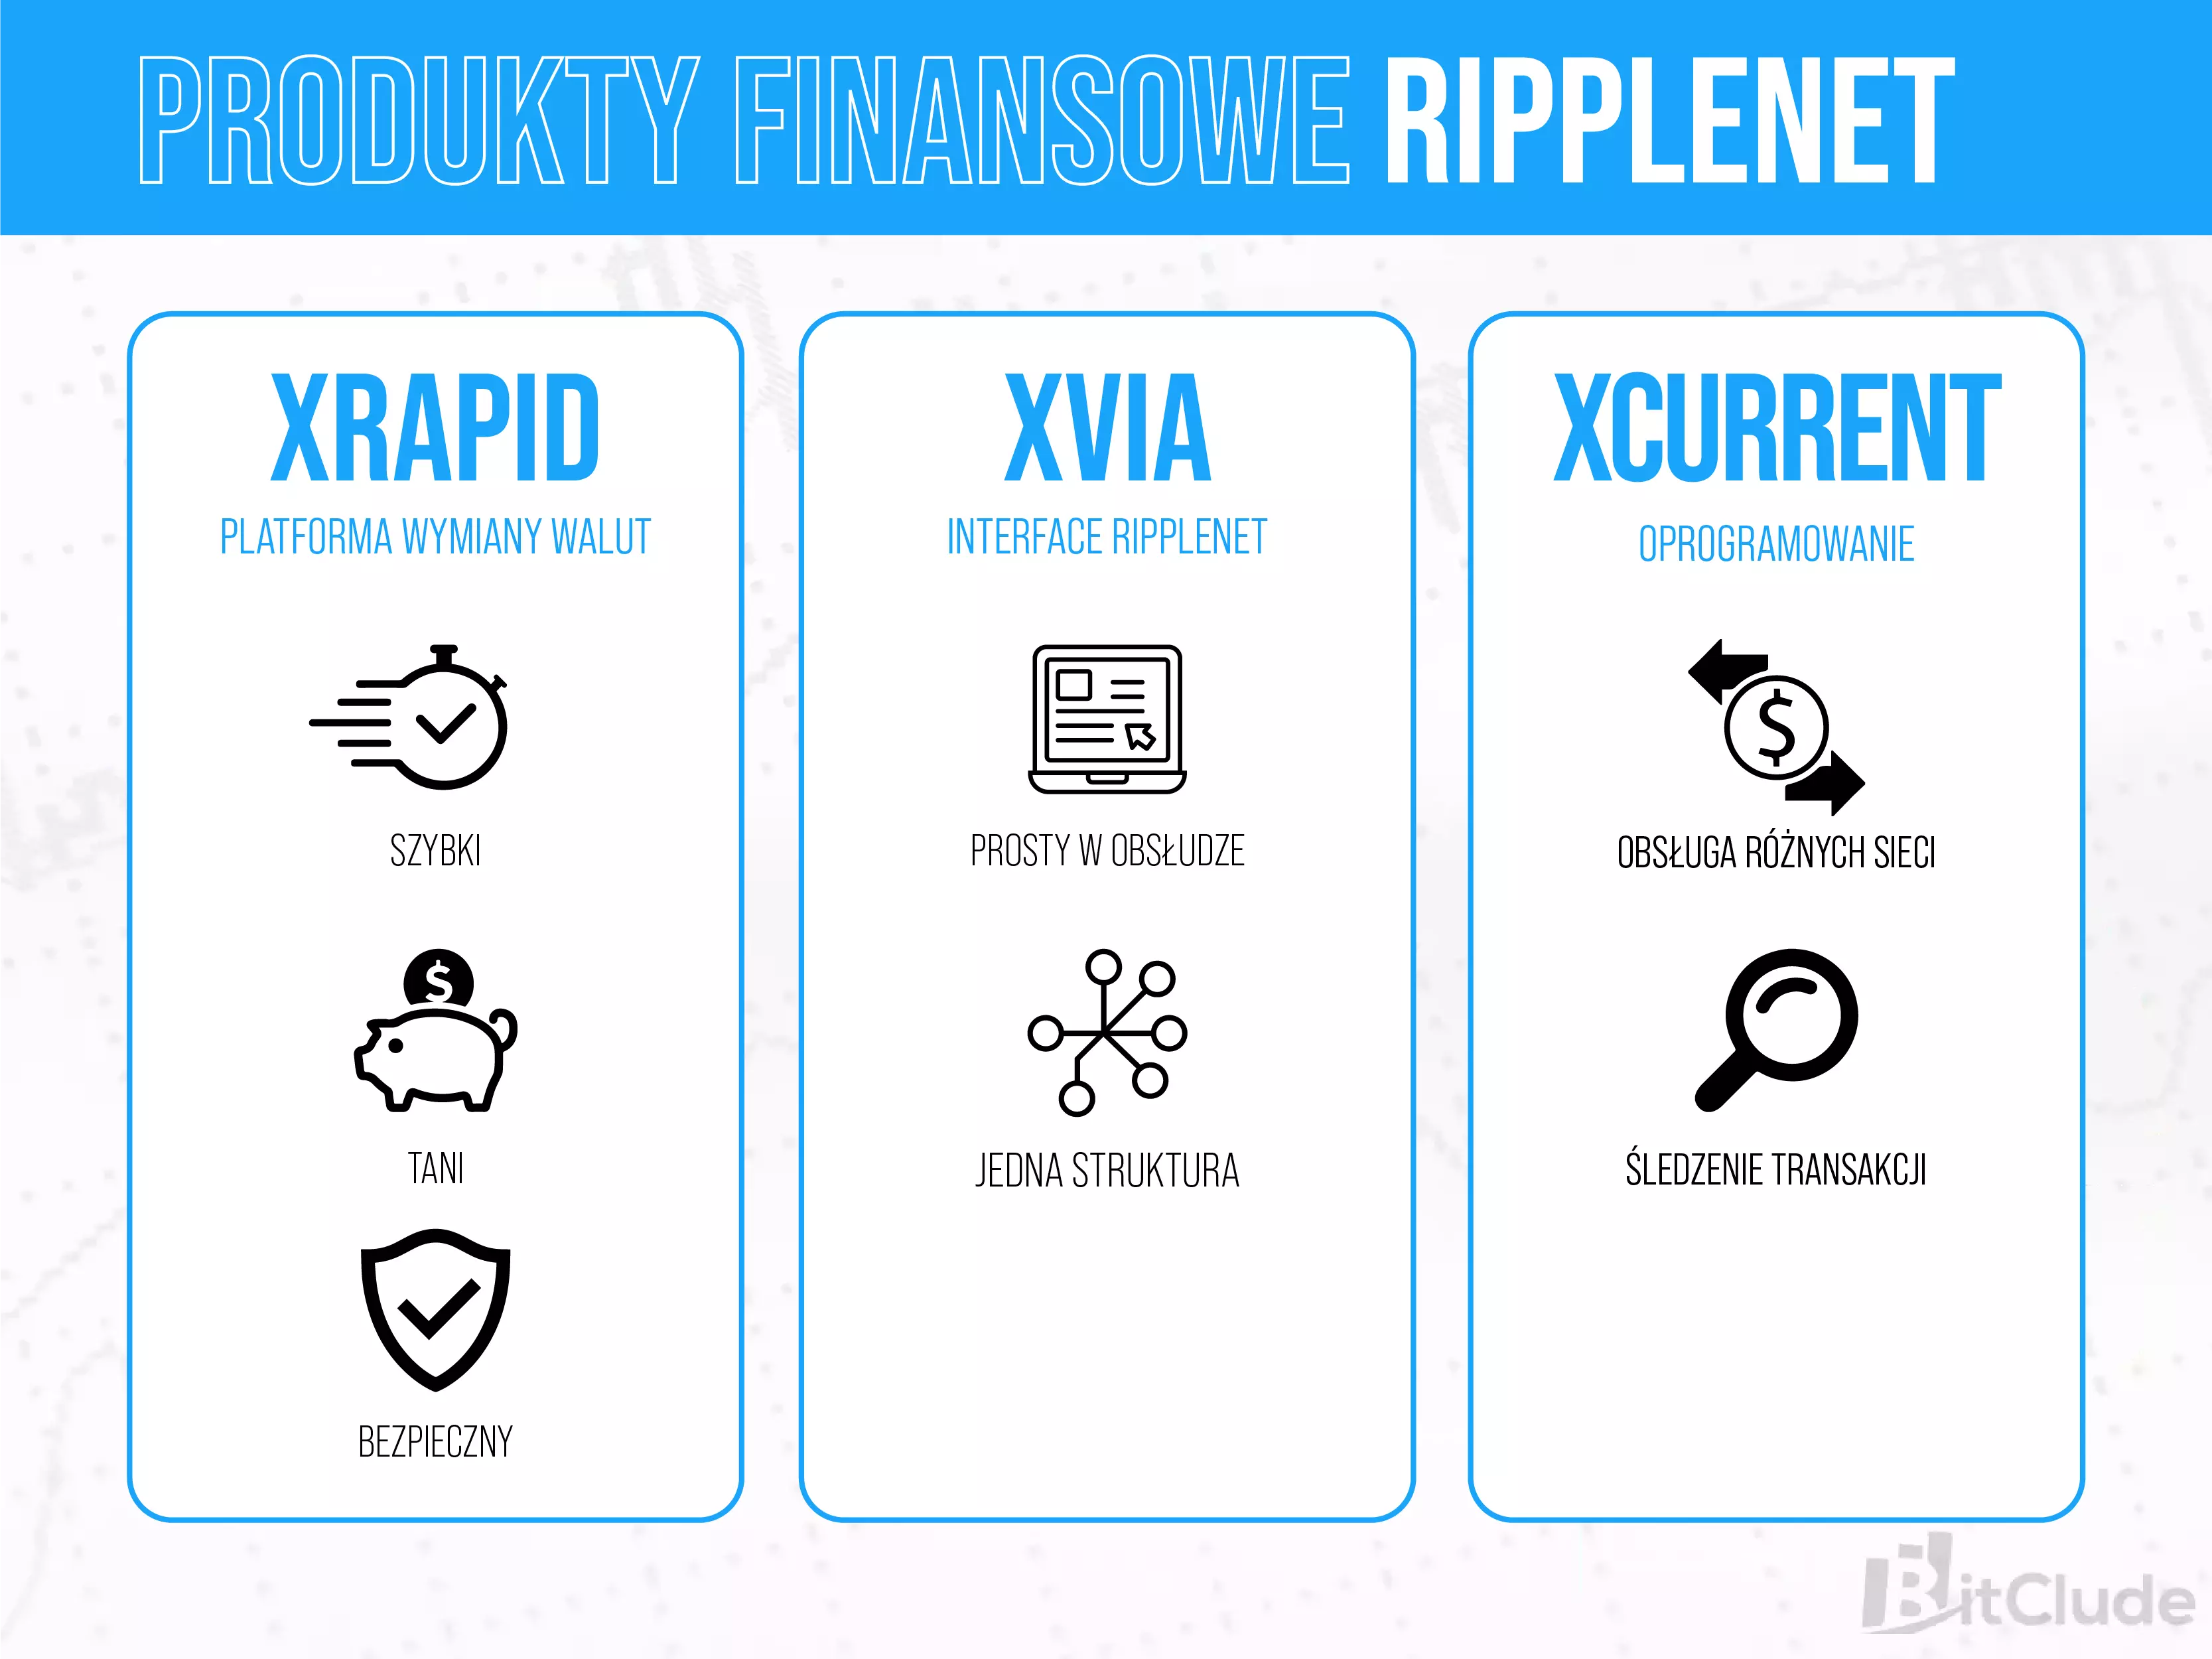 Produkty finansowe RippleNET - oprócz kryptowaluty, ripple ma w swoich zasobach produkty dla instytucji.